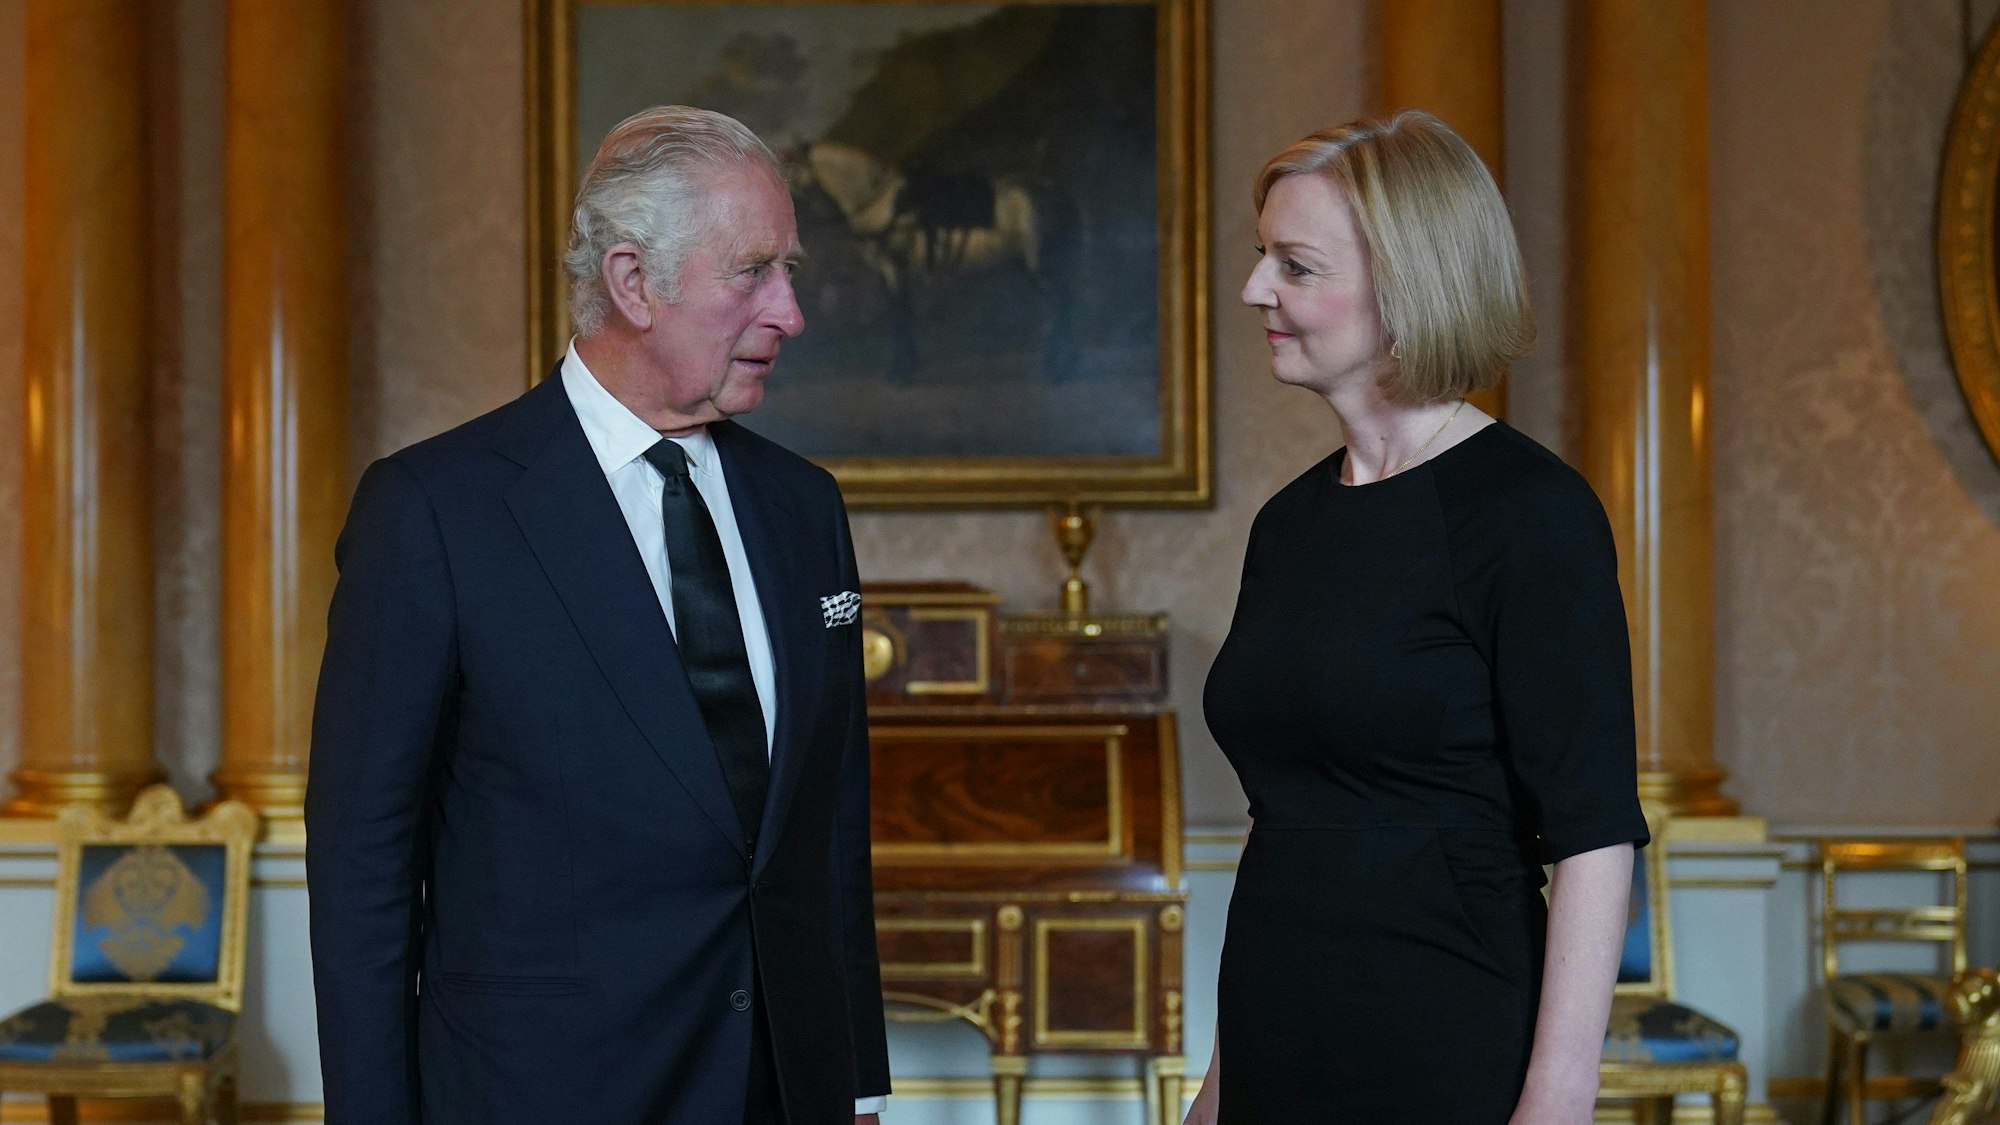 König Charles III. von Großbritannien empfängt die ehemalige Premierministerin Liz Truss zu deren ersten Audienz im Buckingham Palast nach dem Tod der Queen. Sie stehen sich gegenüber und schauen sich an.